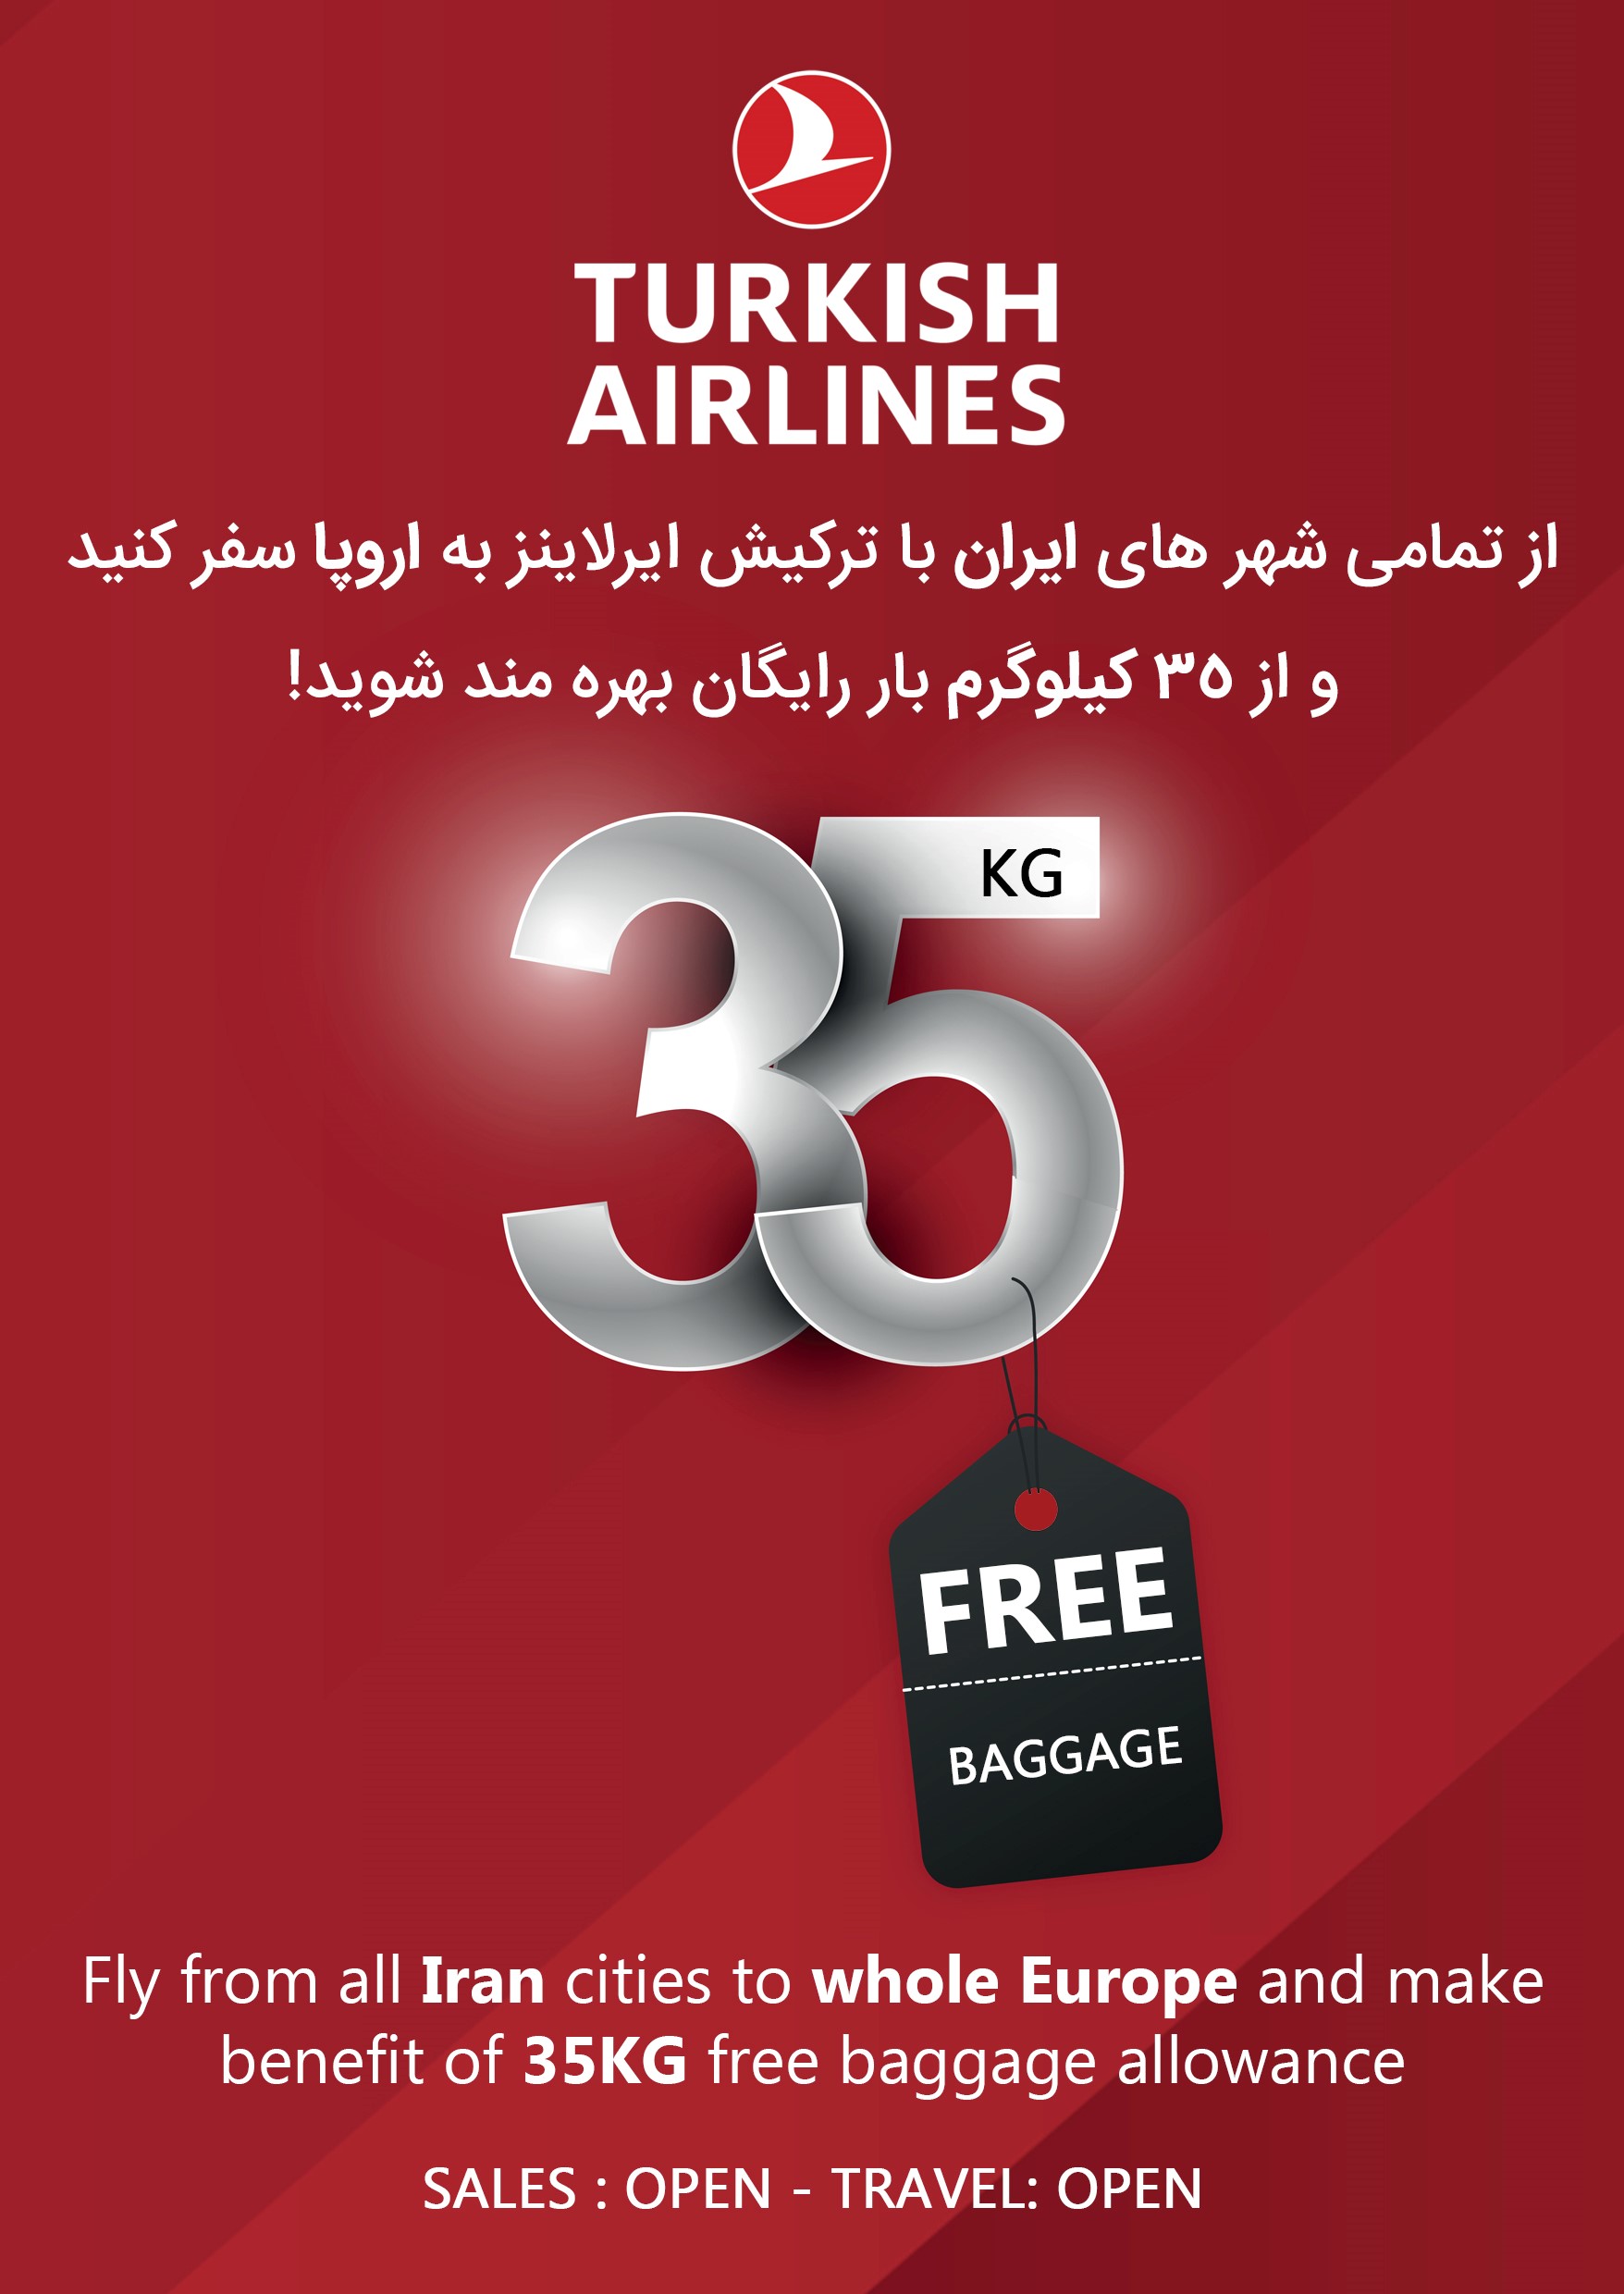 بخشنامه و اطلاعیه   هواپیمایی ترکیش درباره سفر به اروپا با 35 کیلوگرم بار رایگان 35 KG Europe Baggage